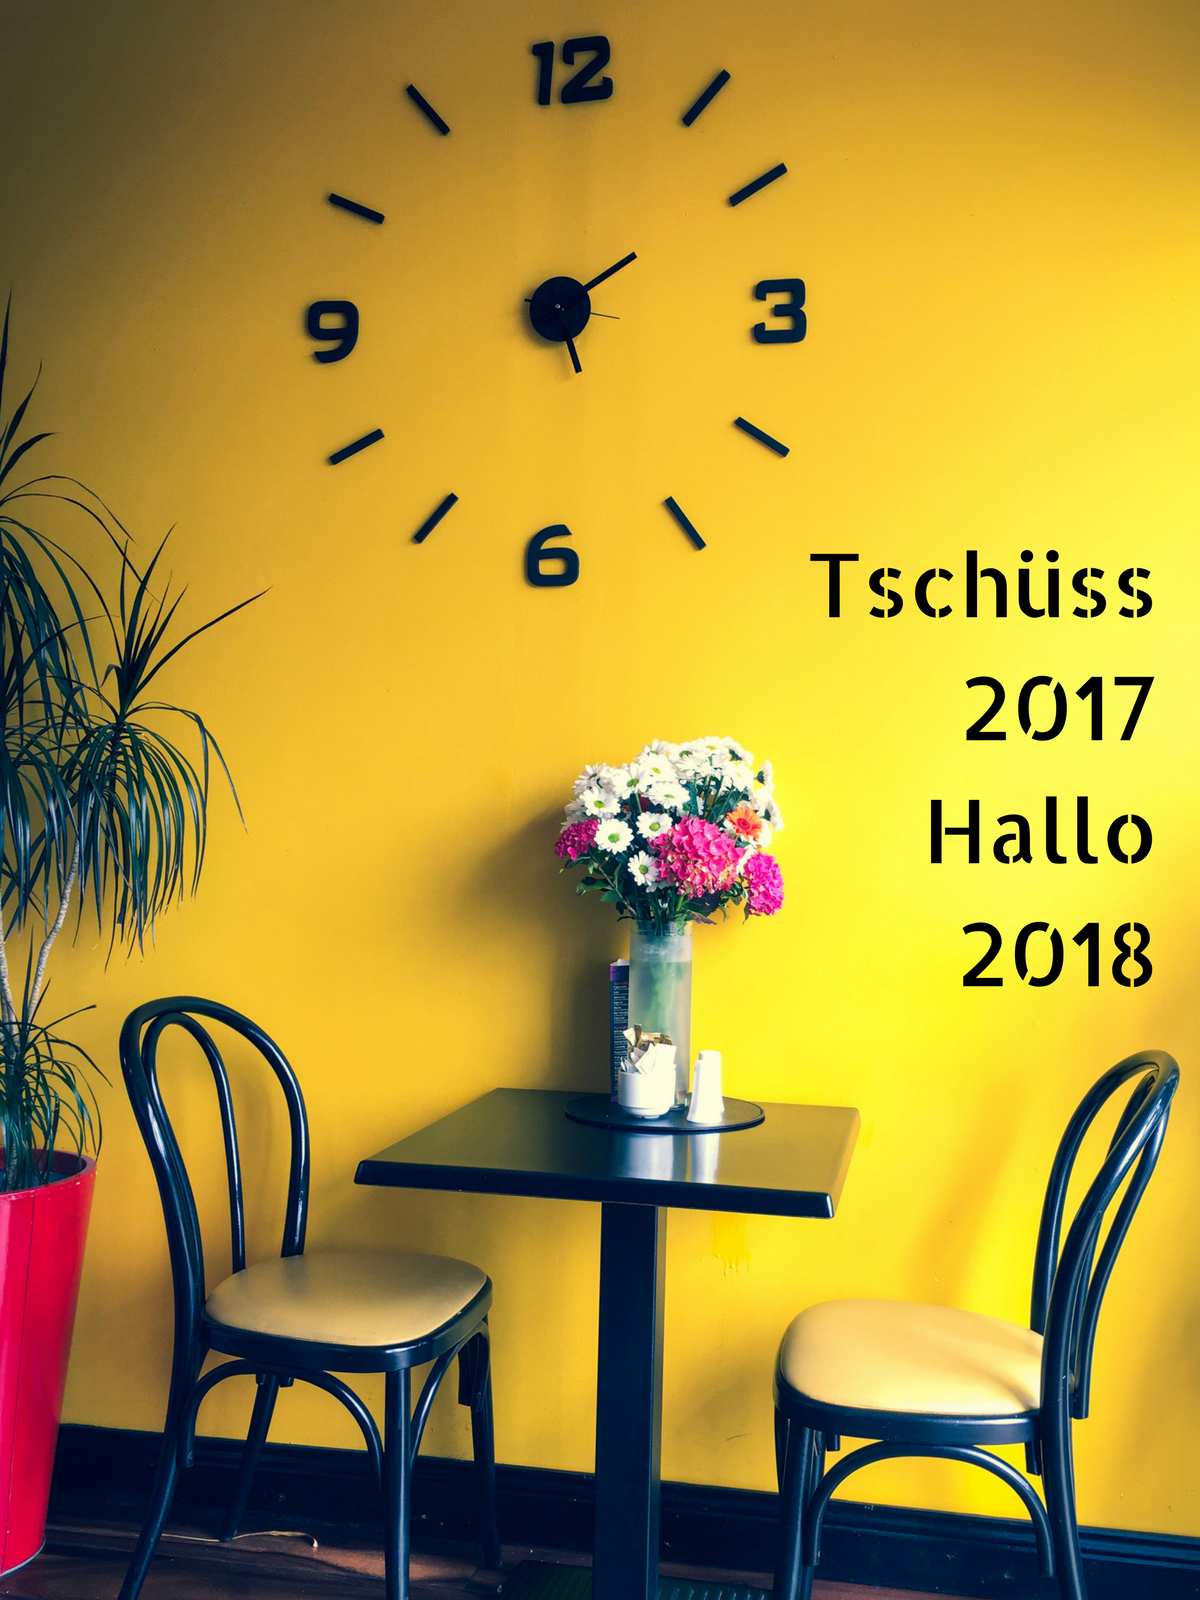 Tschüss 2017 & Hallo 2018 Bilanz 2017 und Vorschau 2017 keksstaub